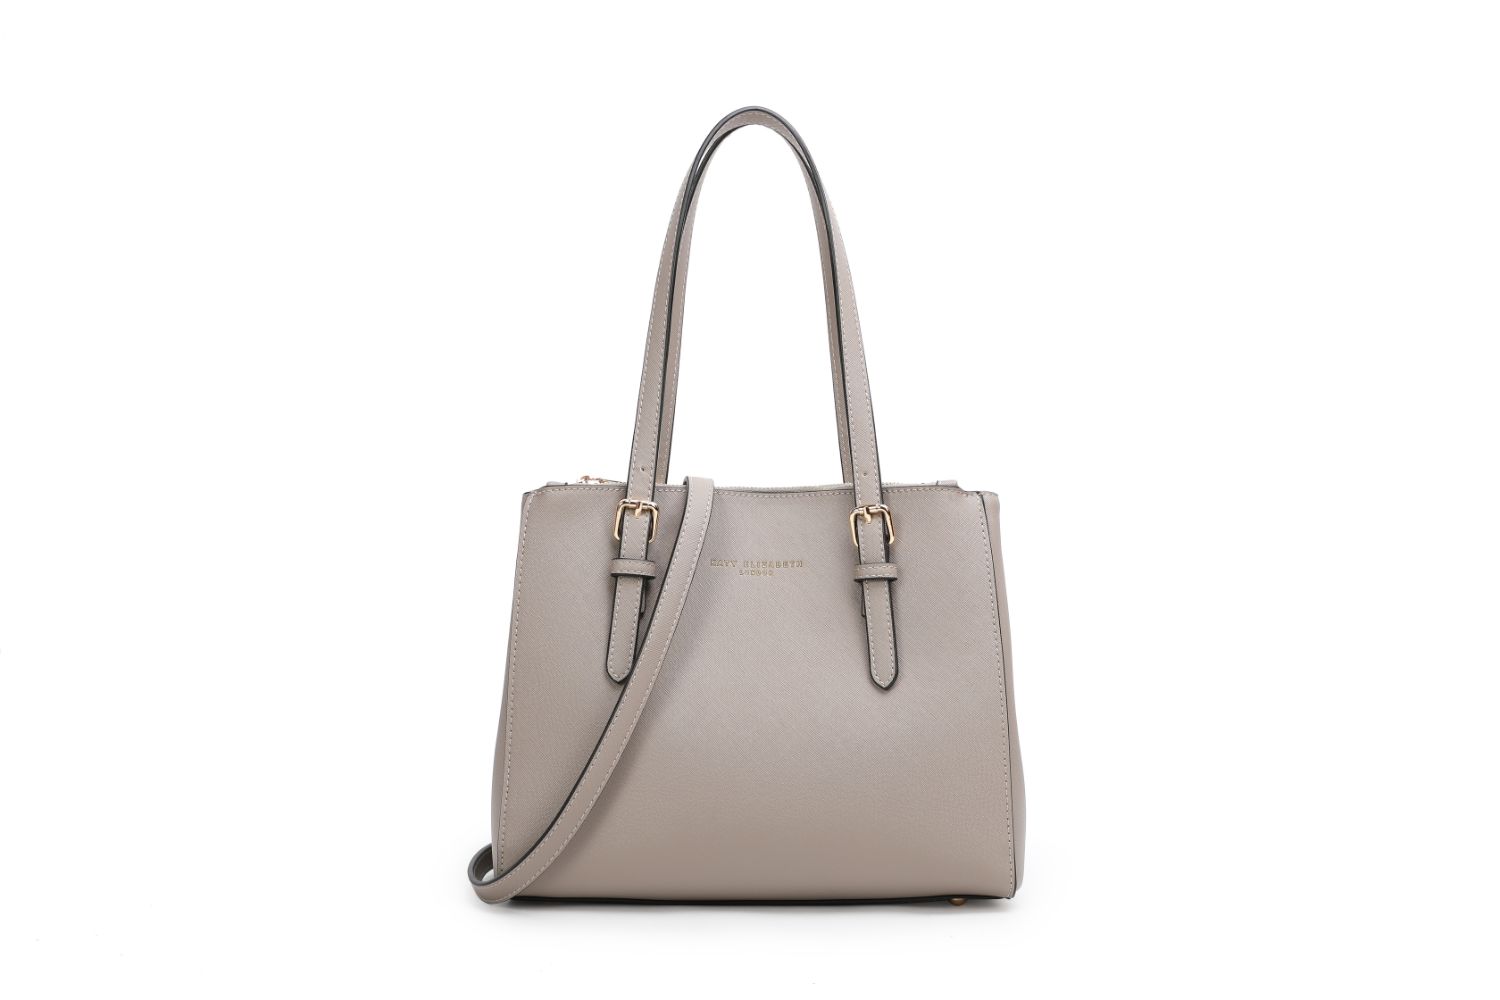 "Katy Elizabeth London" Special Edition Designer Handbags